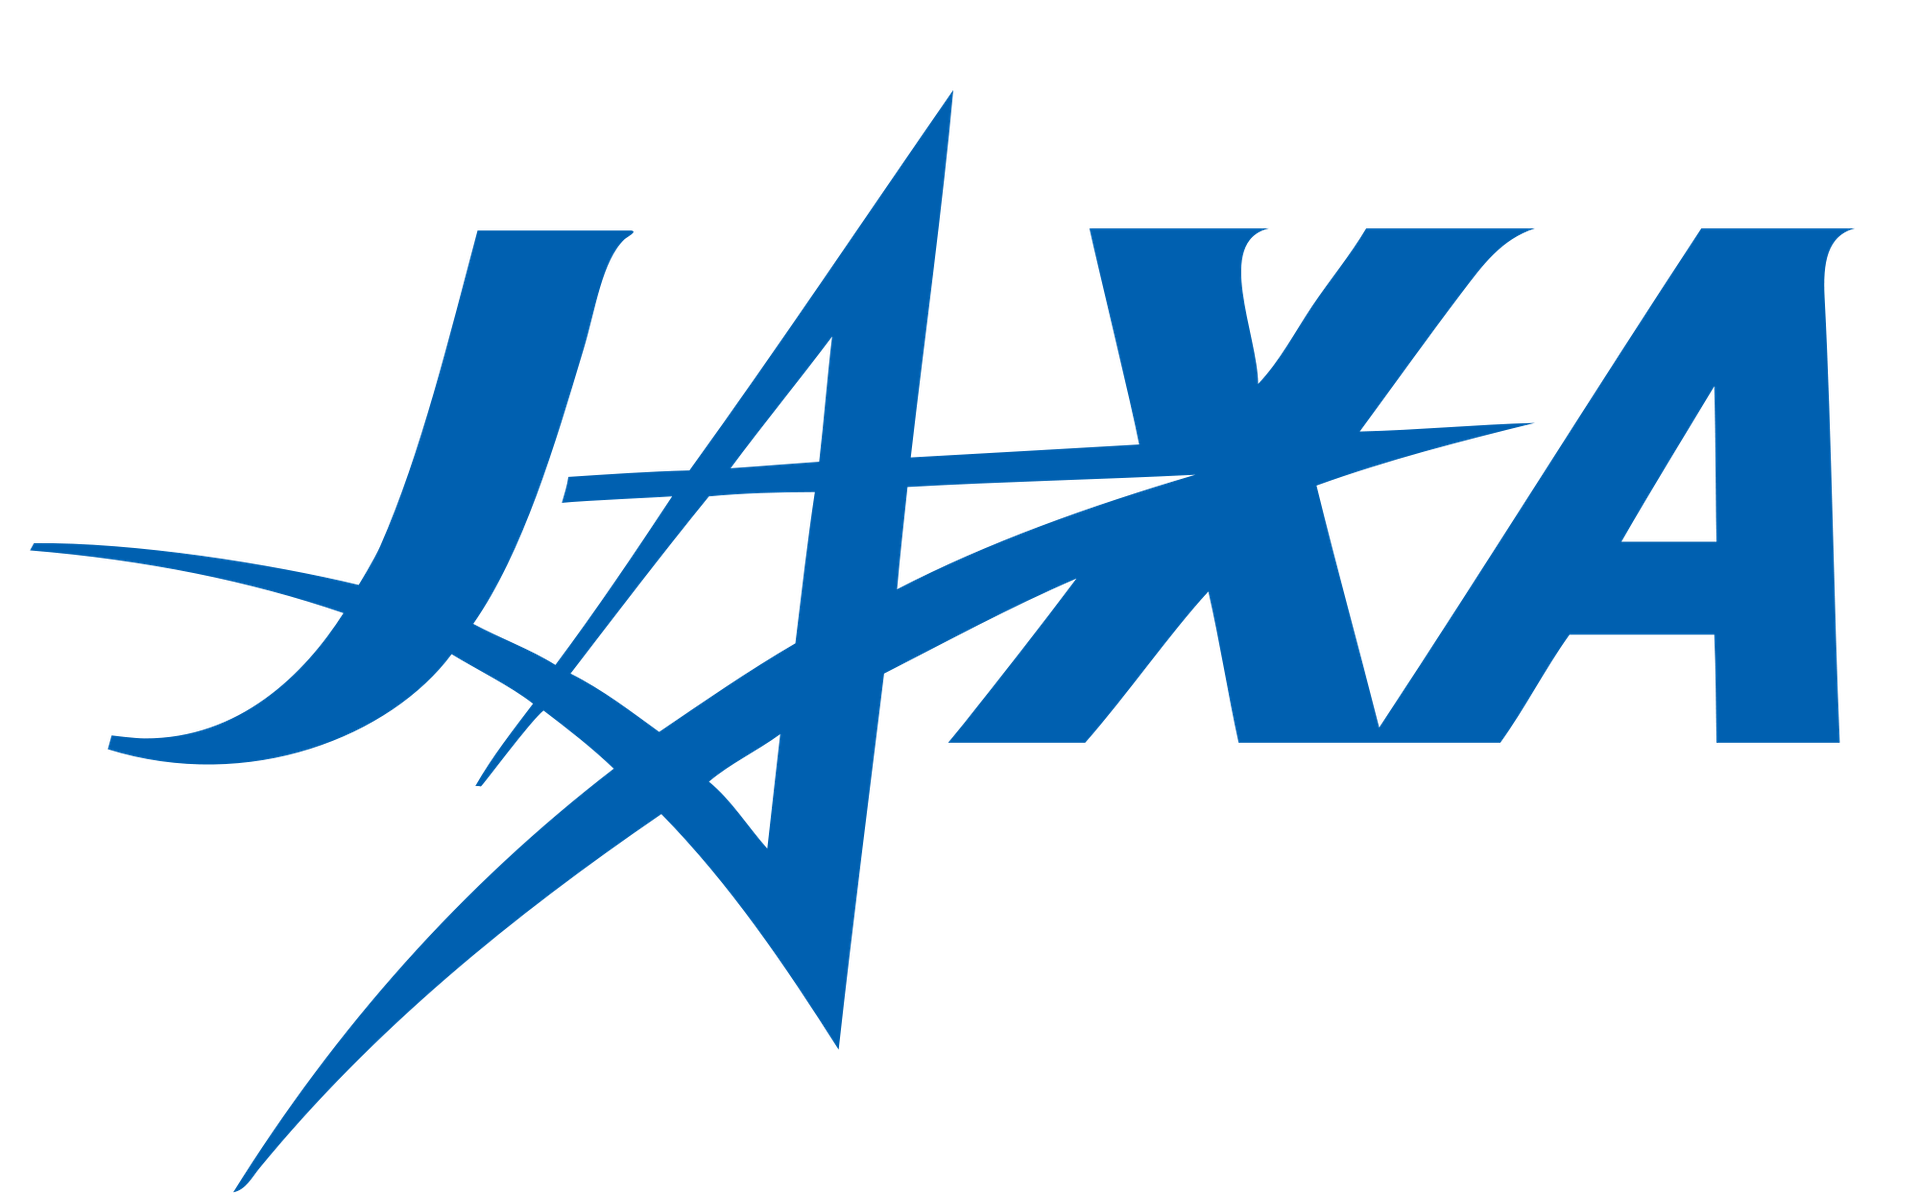 Japan Aerospace Exploration Agency's logo